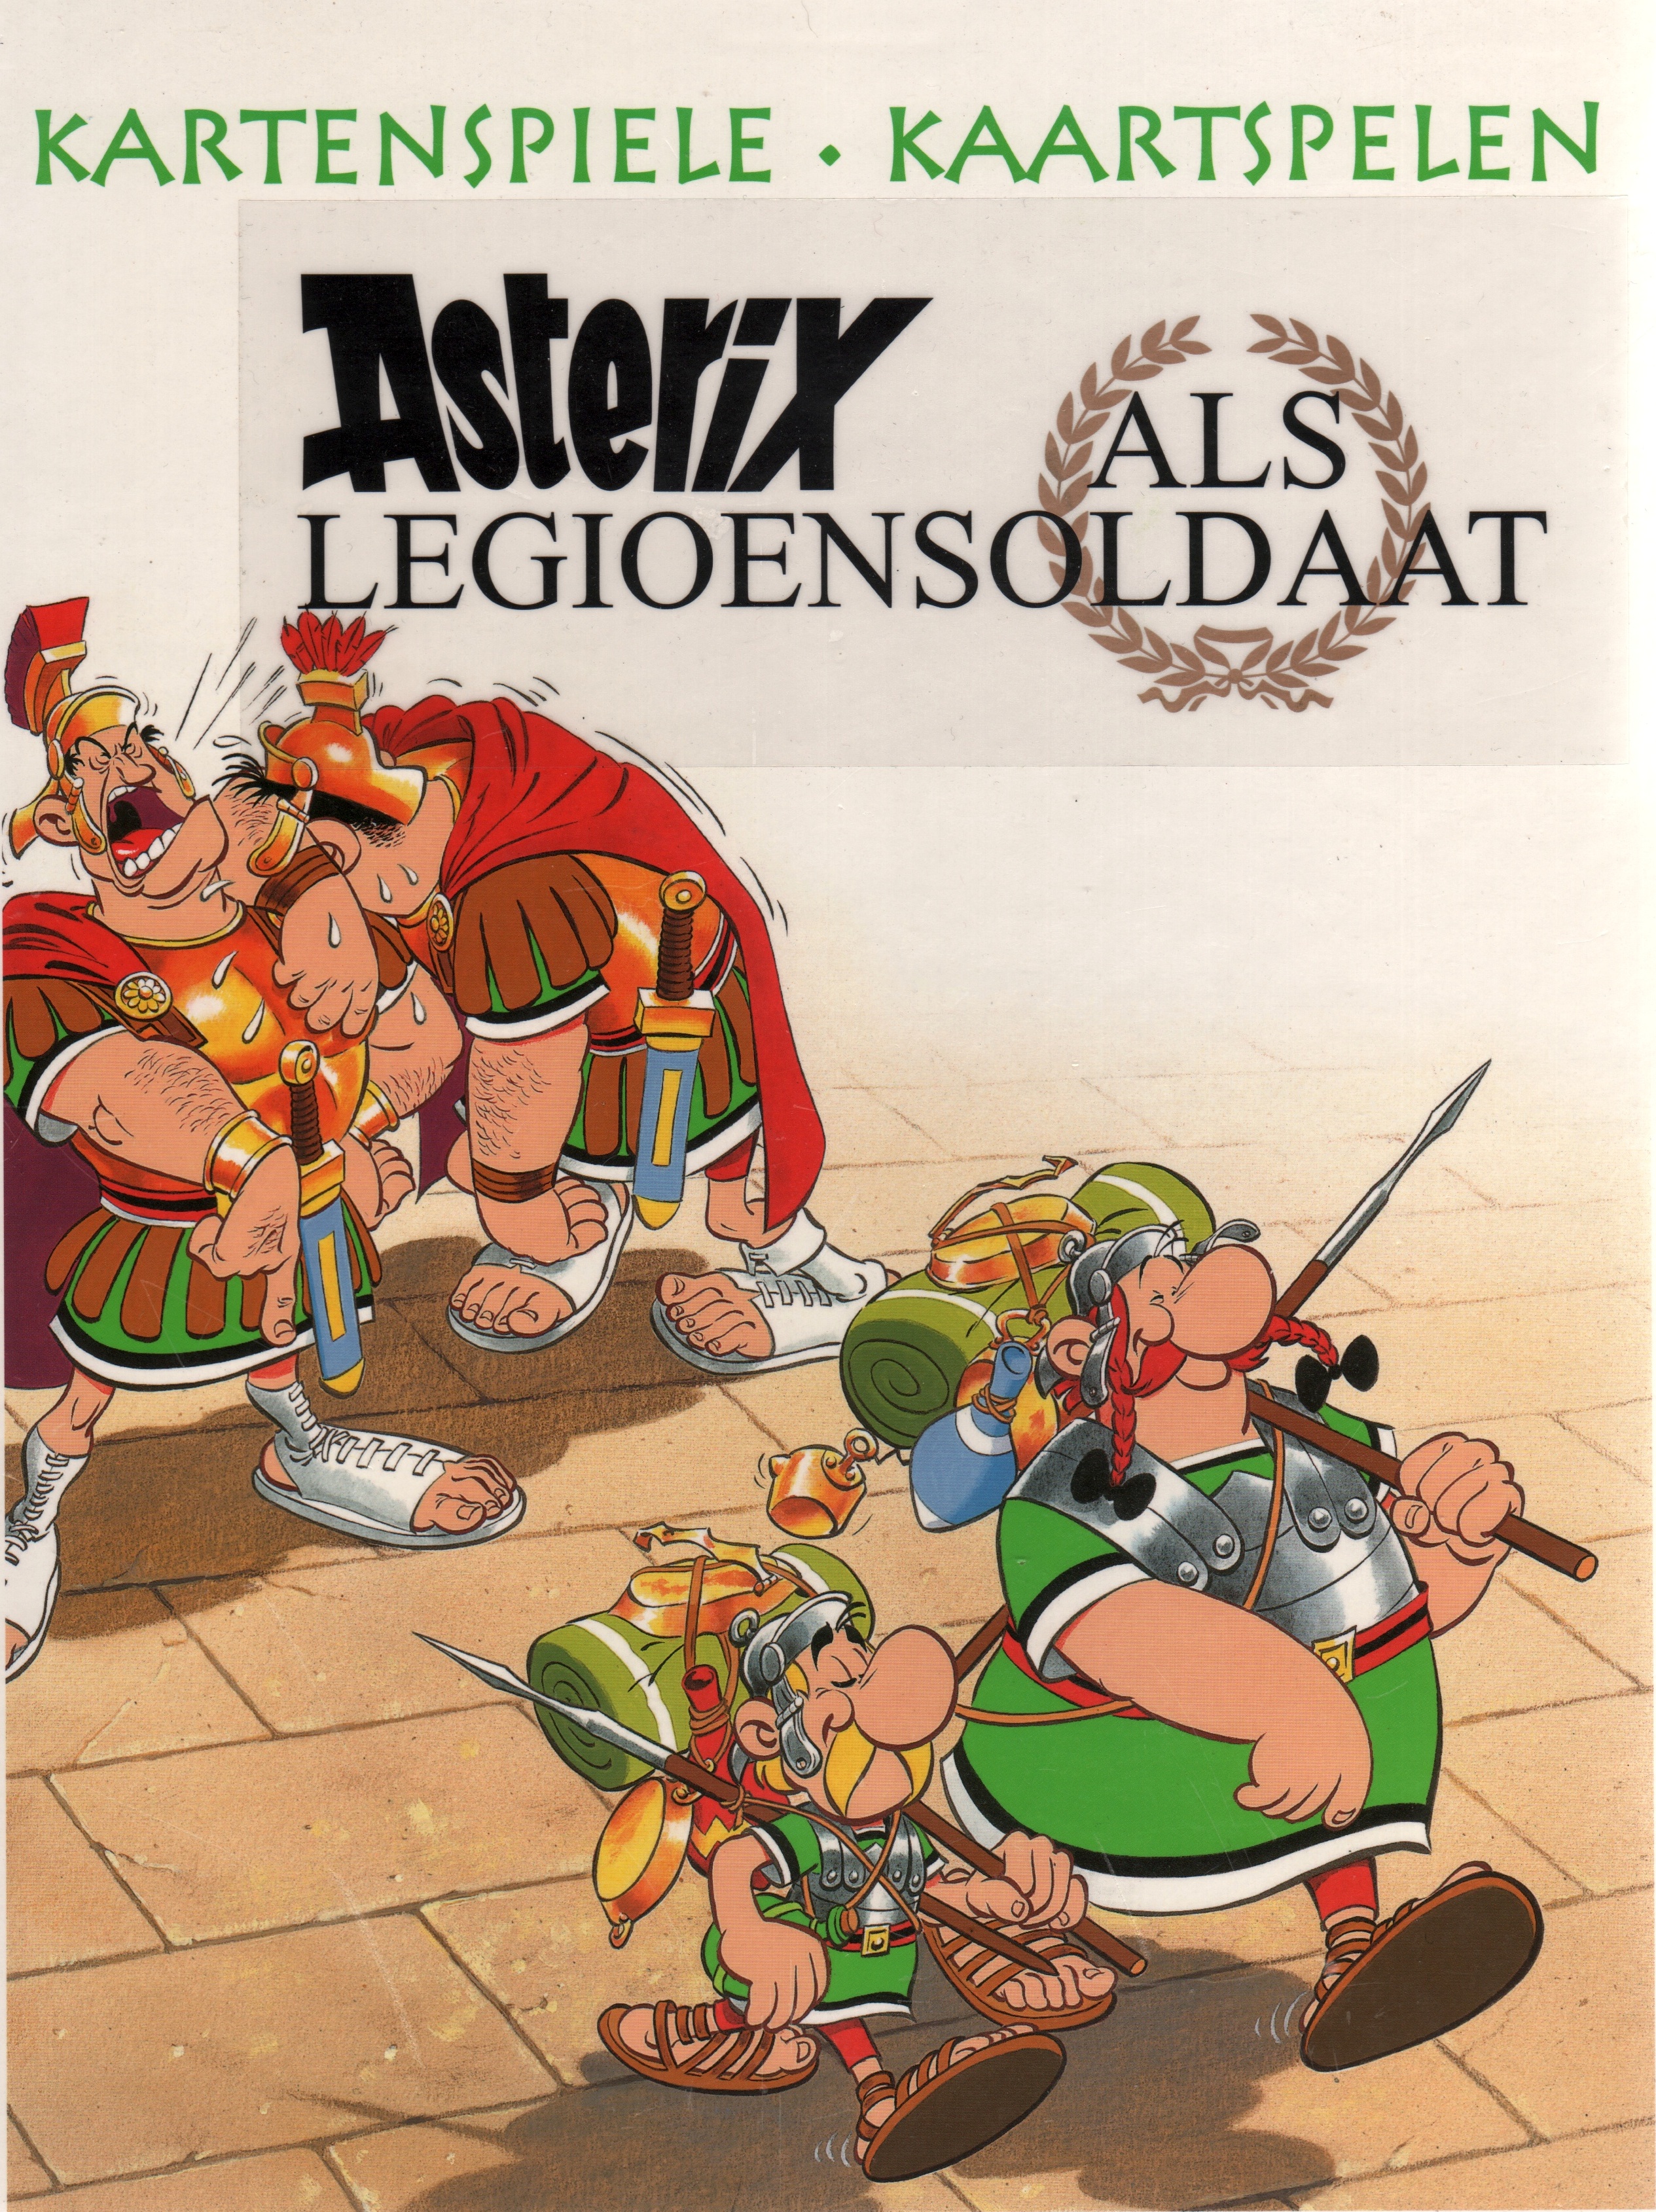 Atlas Asterix Spellenserie: 01 - Kaartspelen (Asterix als Legioensoldaat)